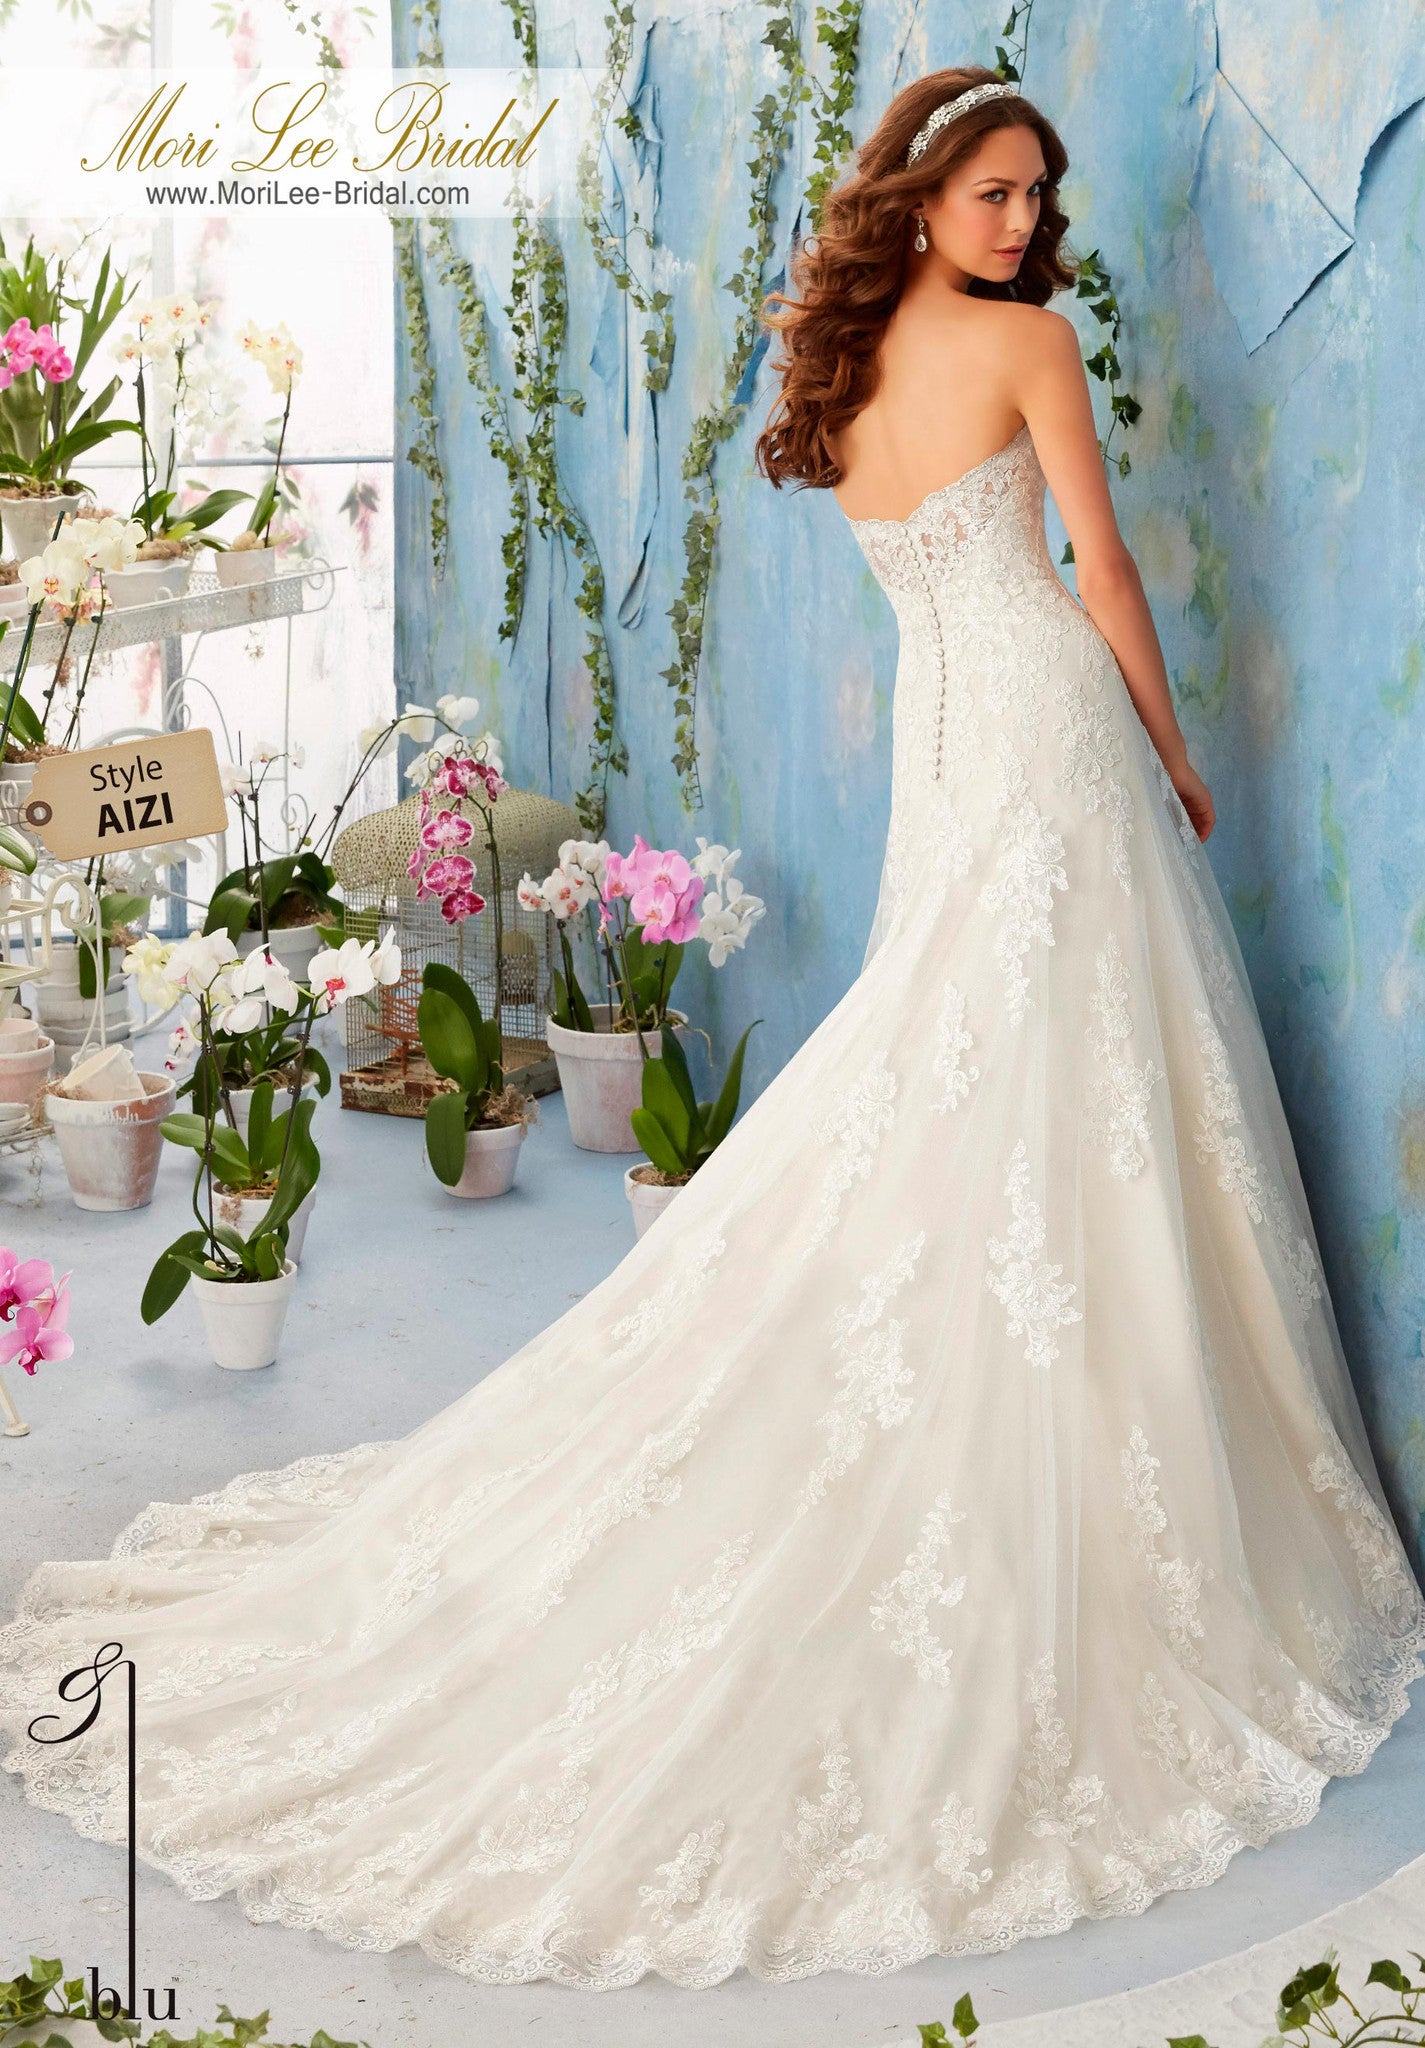 Vestido de novia con aplicaciones de encaje bordado. Aplicaciones de encaje bordadas, decoran el vestido de net con dobladillo festoneado sobre satén suave. AIZI*